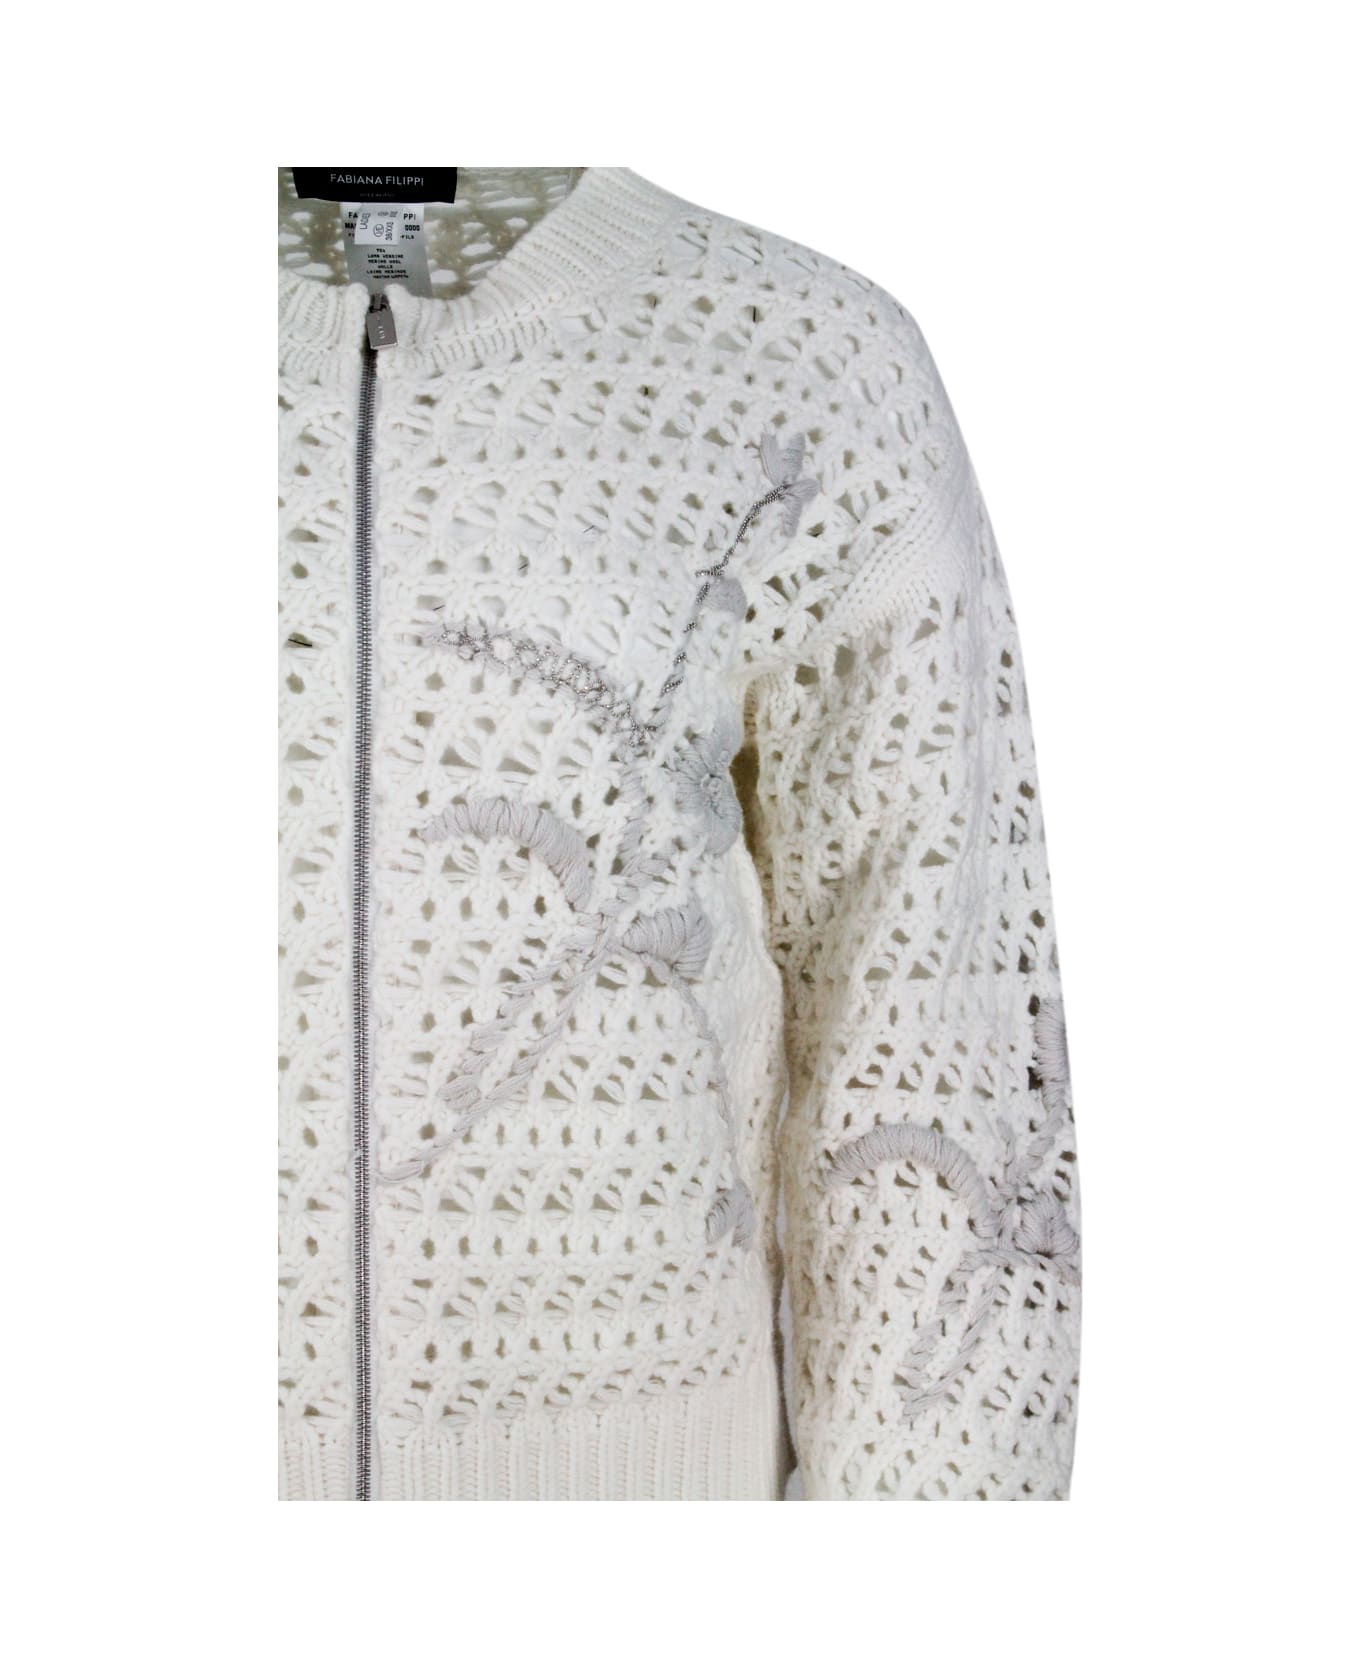 Fabiana Filippi Long-sleeved Bomber Full Zip Sweater In Platinum Wool ...